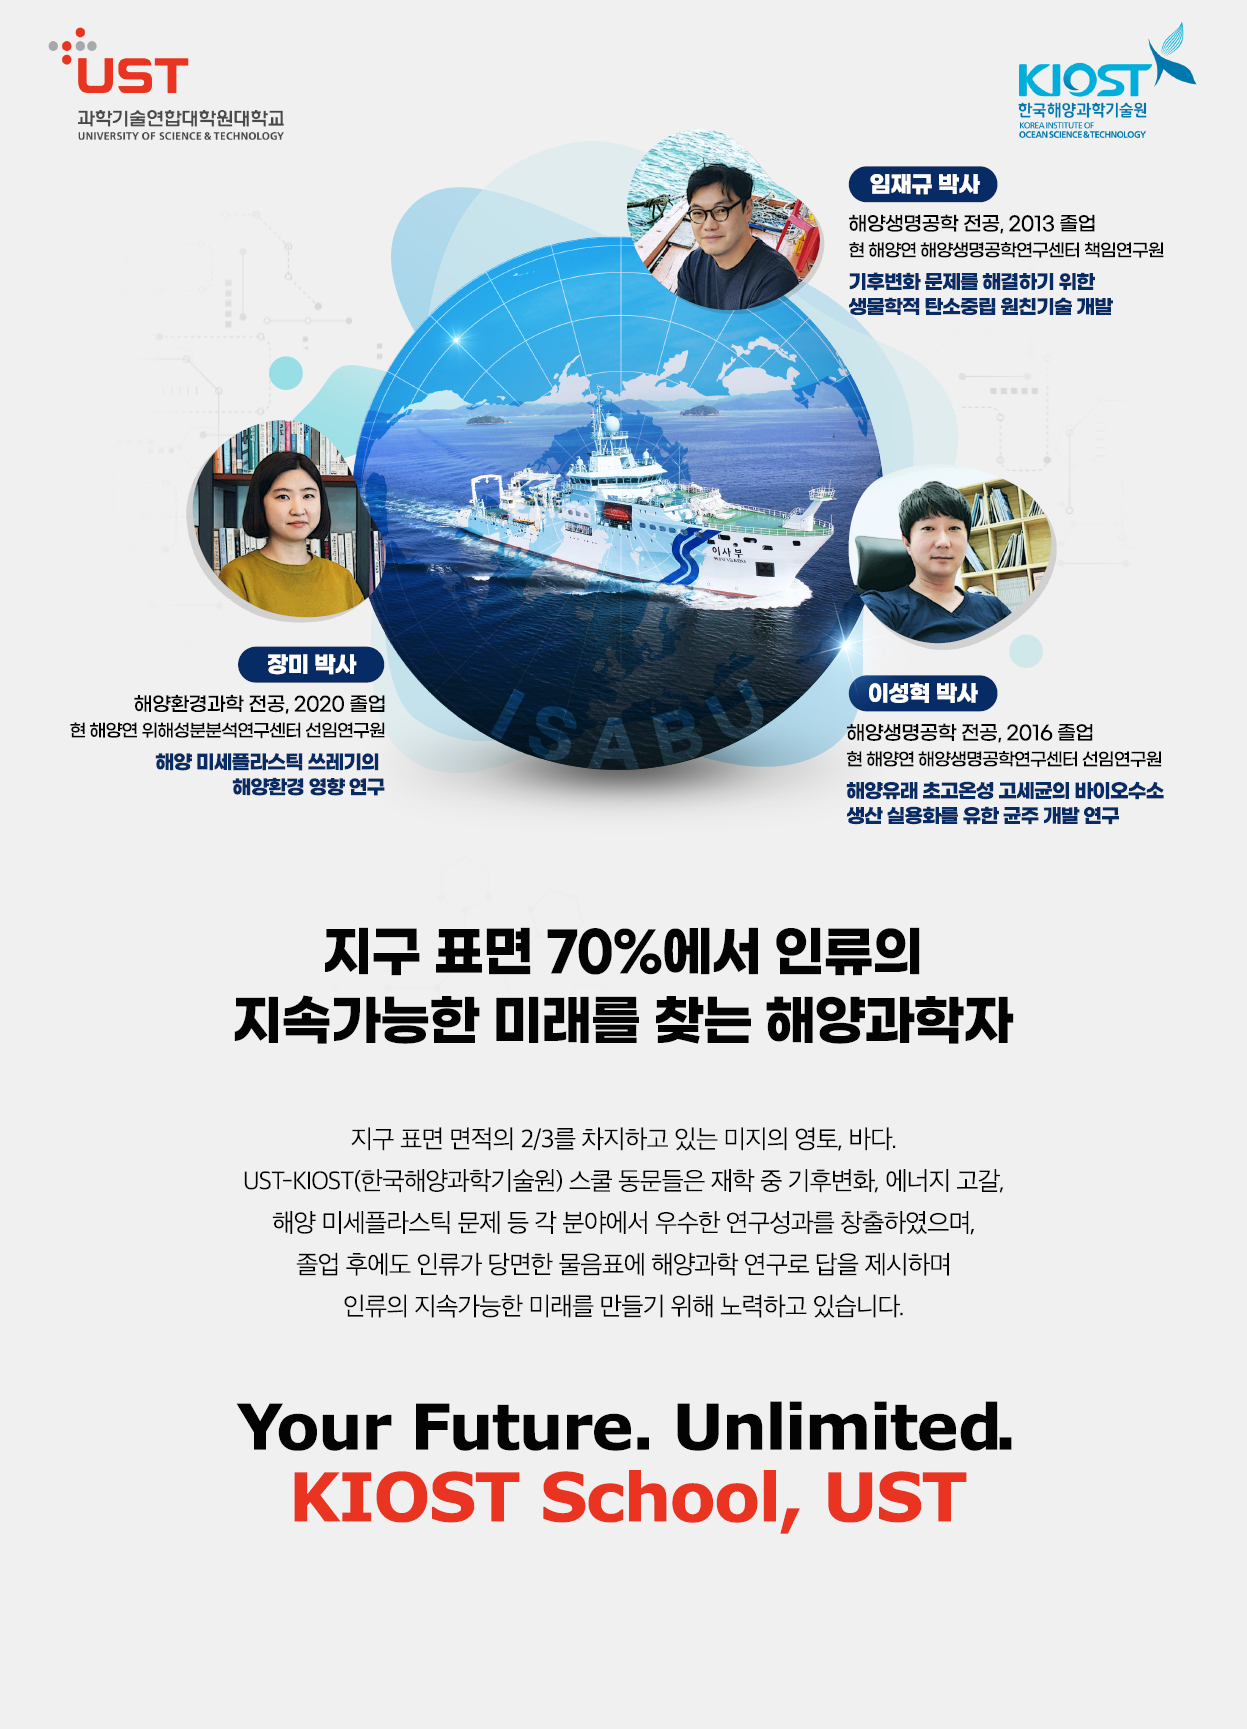 KIOST 한국해양과학기술원 스쿨 포스터로 자세한내용은 하단에 위치해있습니다.